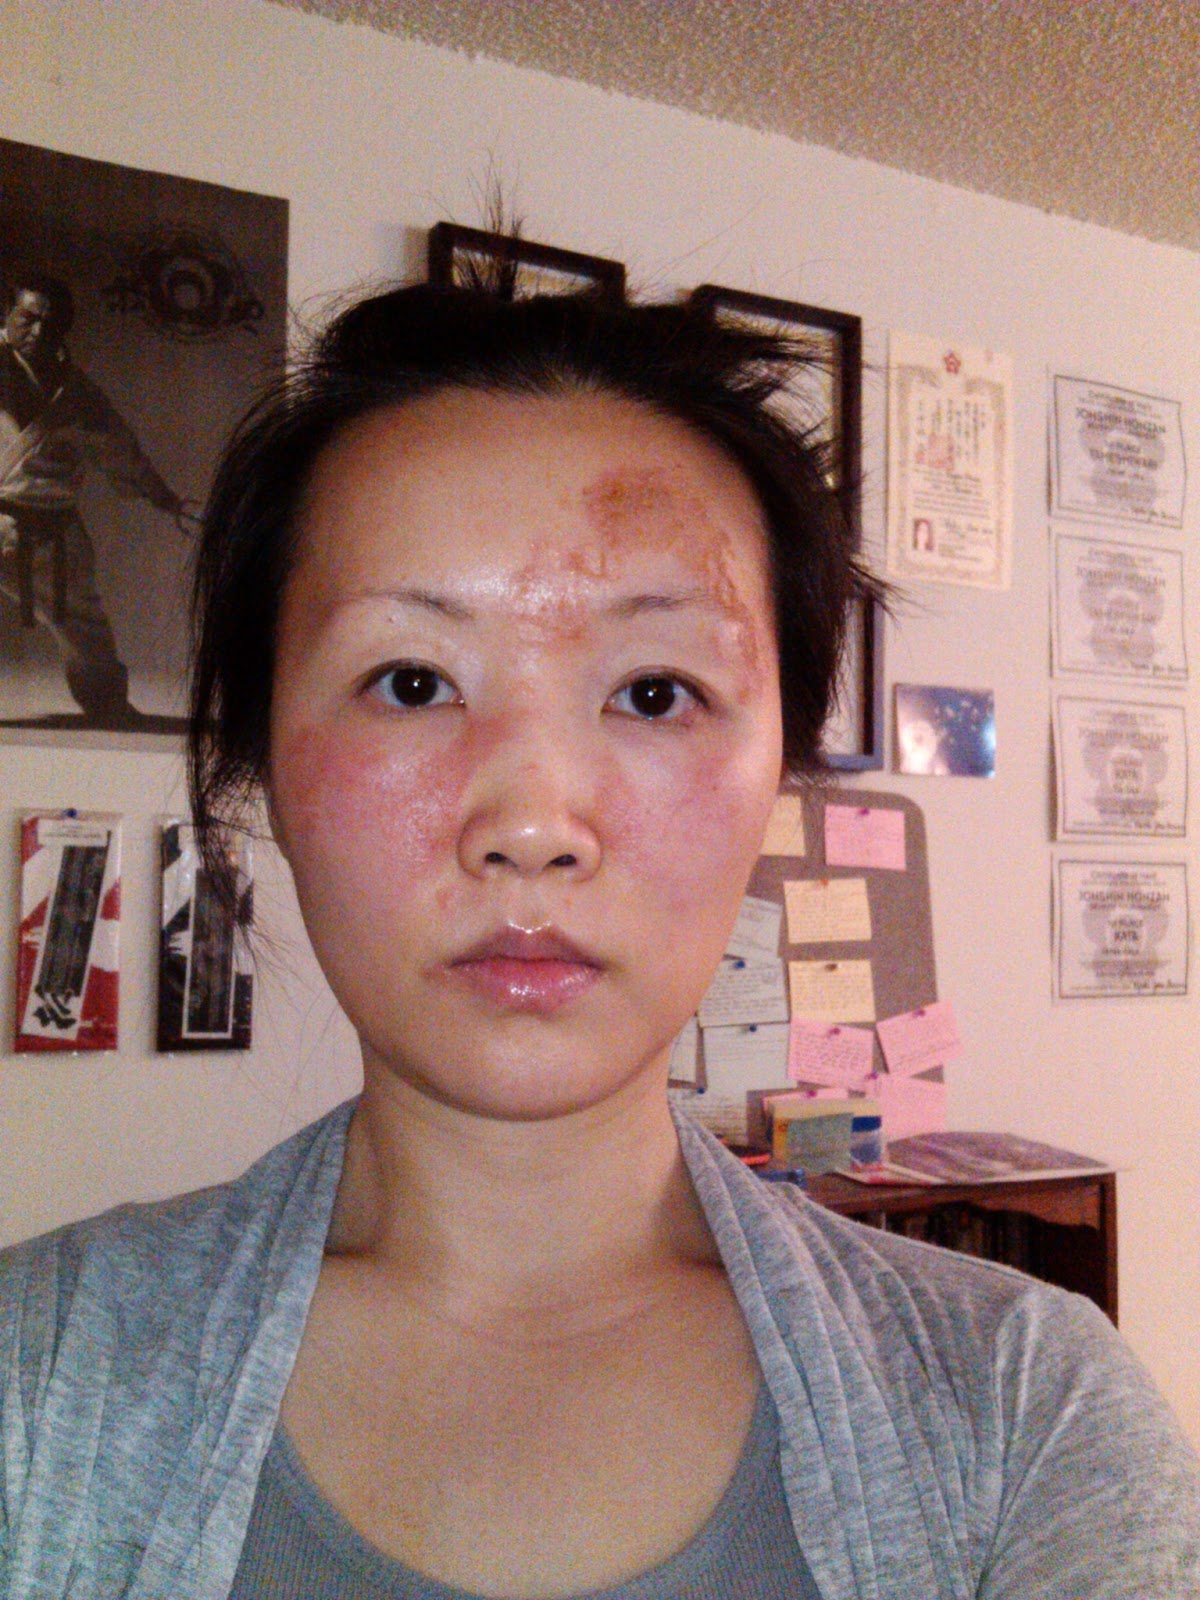 sandpaper rash on face #11